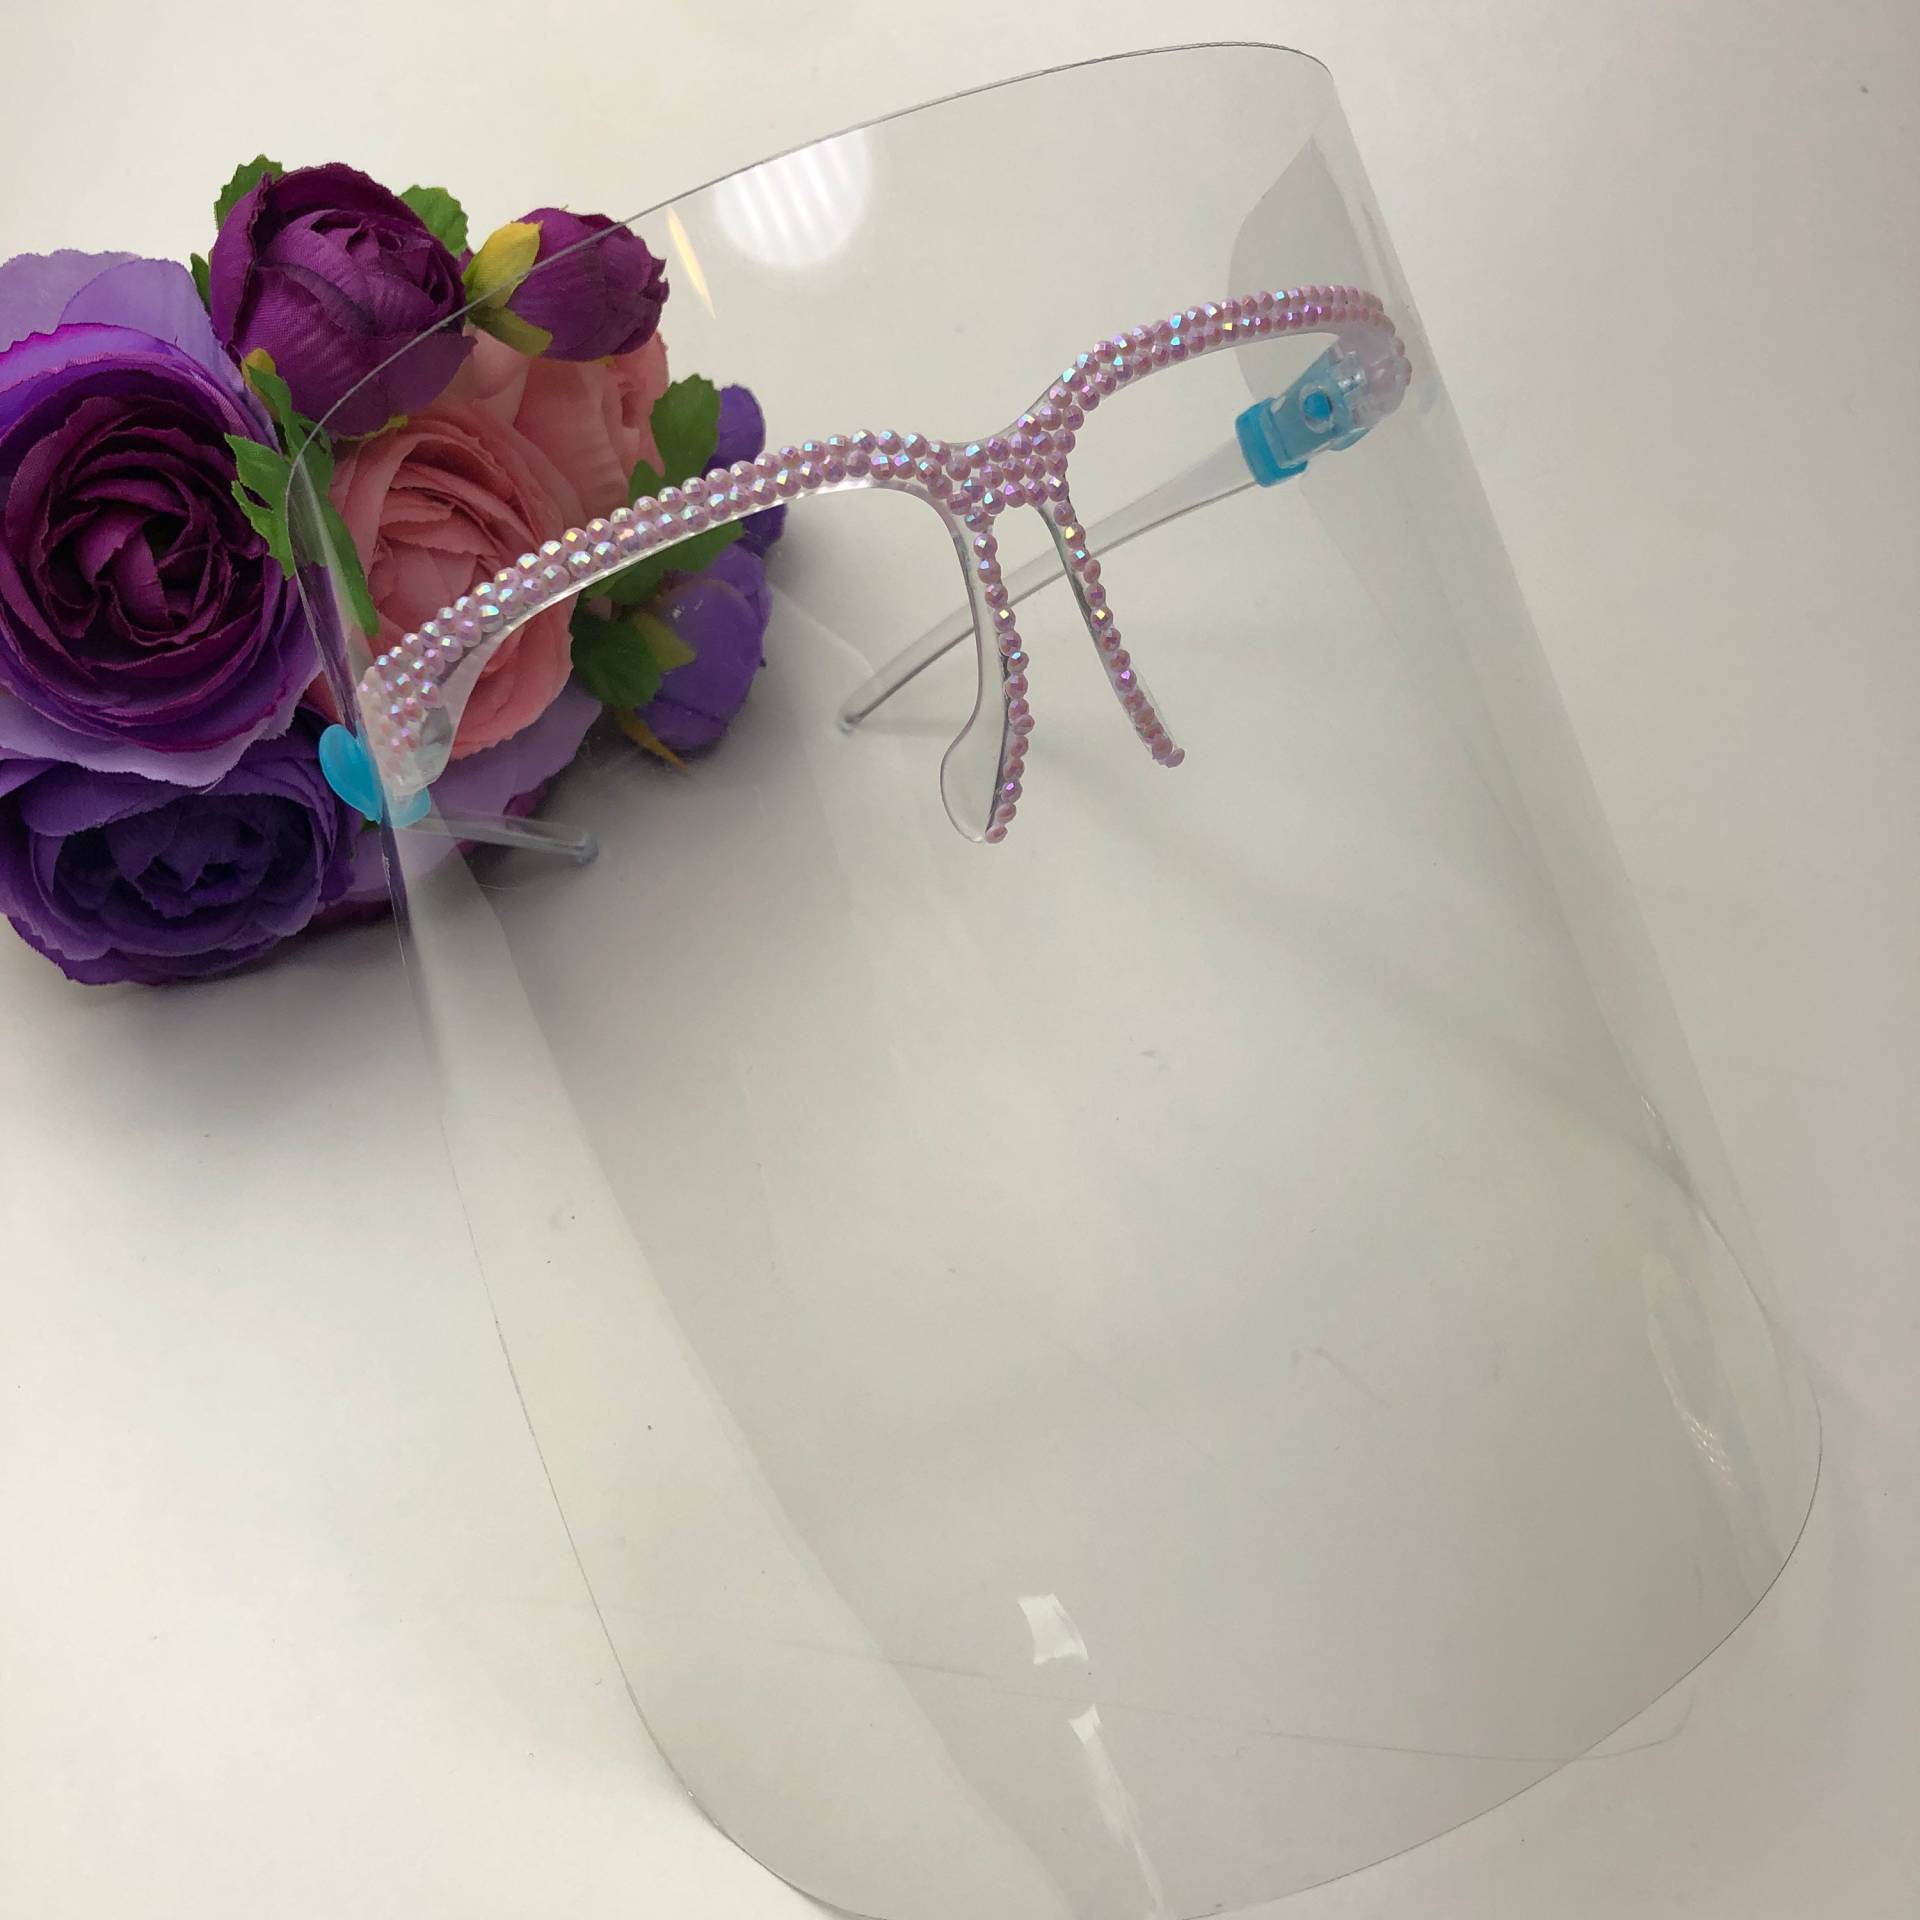 Blinged Lavendel Gesichtsschild Luxus Bedazzled Shields von LuxuryBellaBoutique